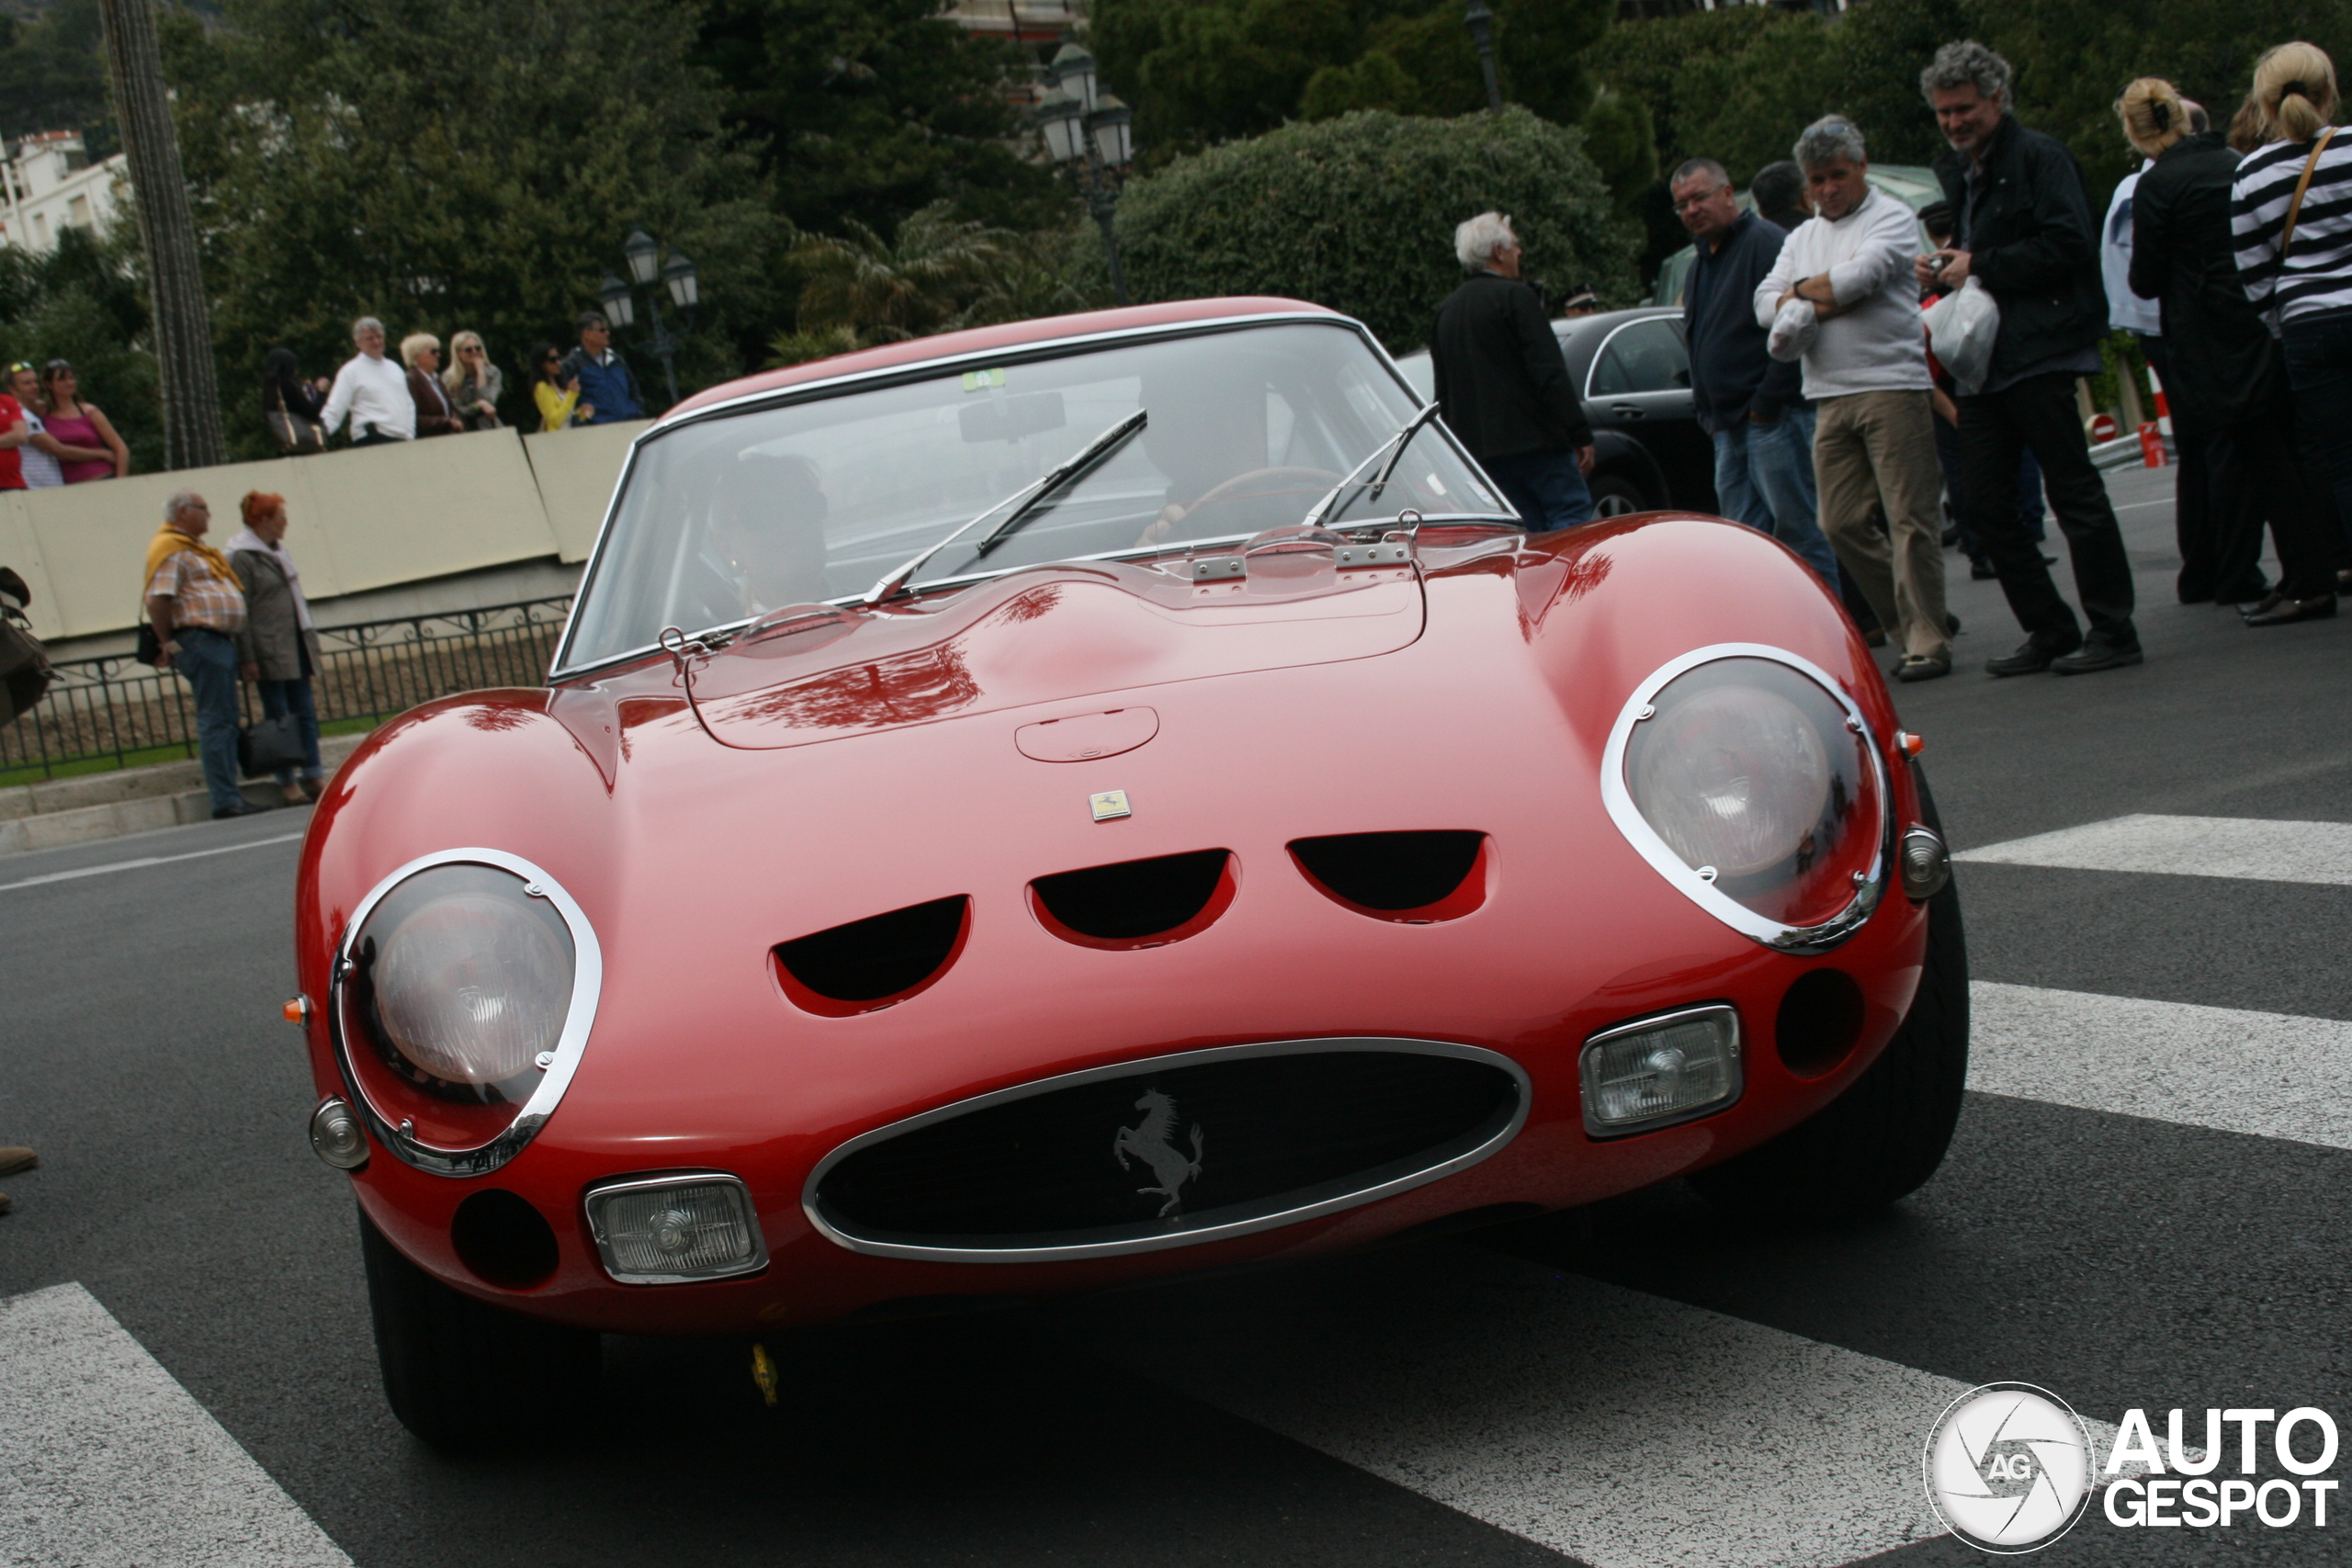 A 250 GTO shows up in Monaco.